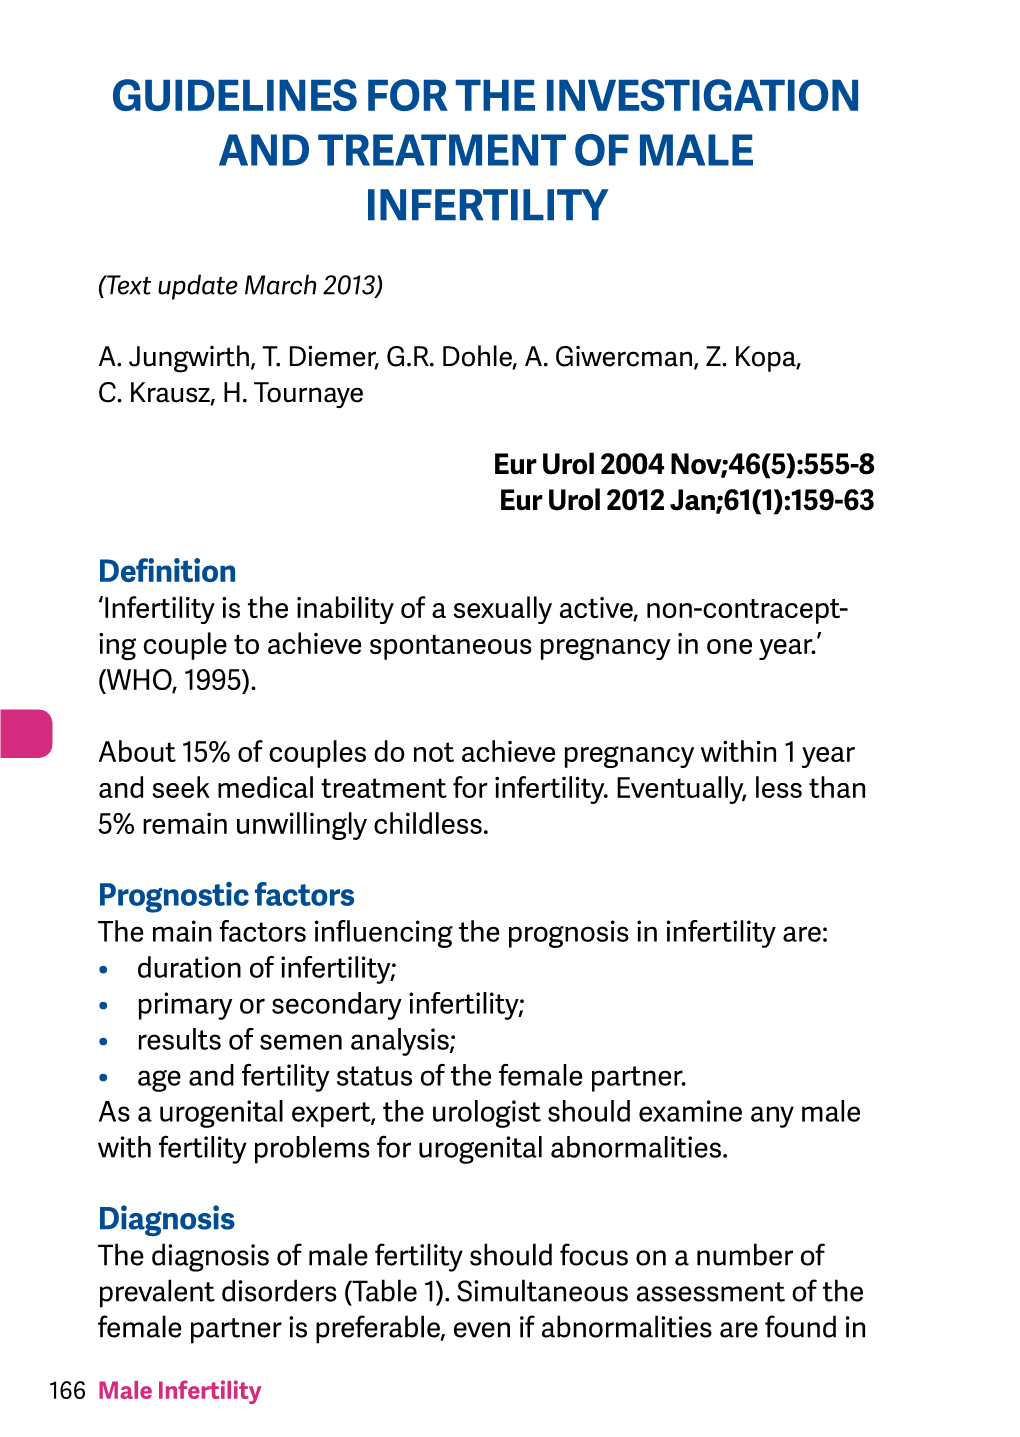 EAU Pocket Guidelines on Male Infertility 2013